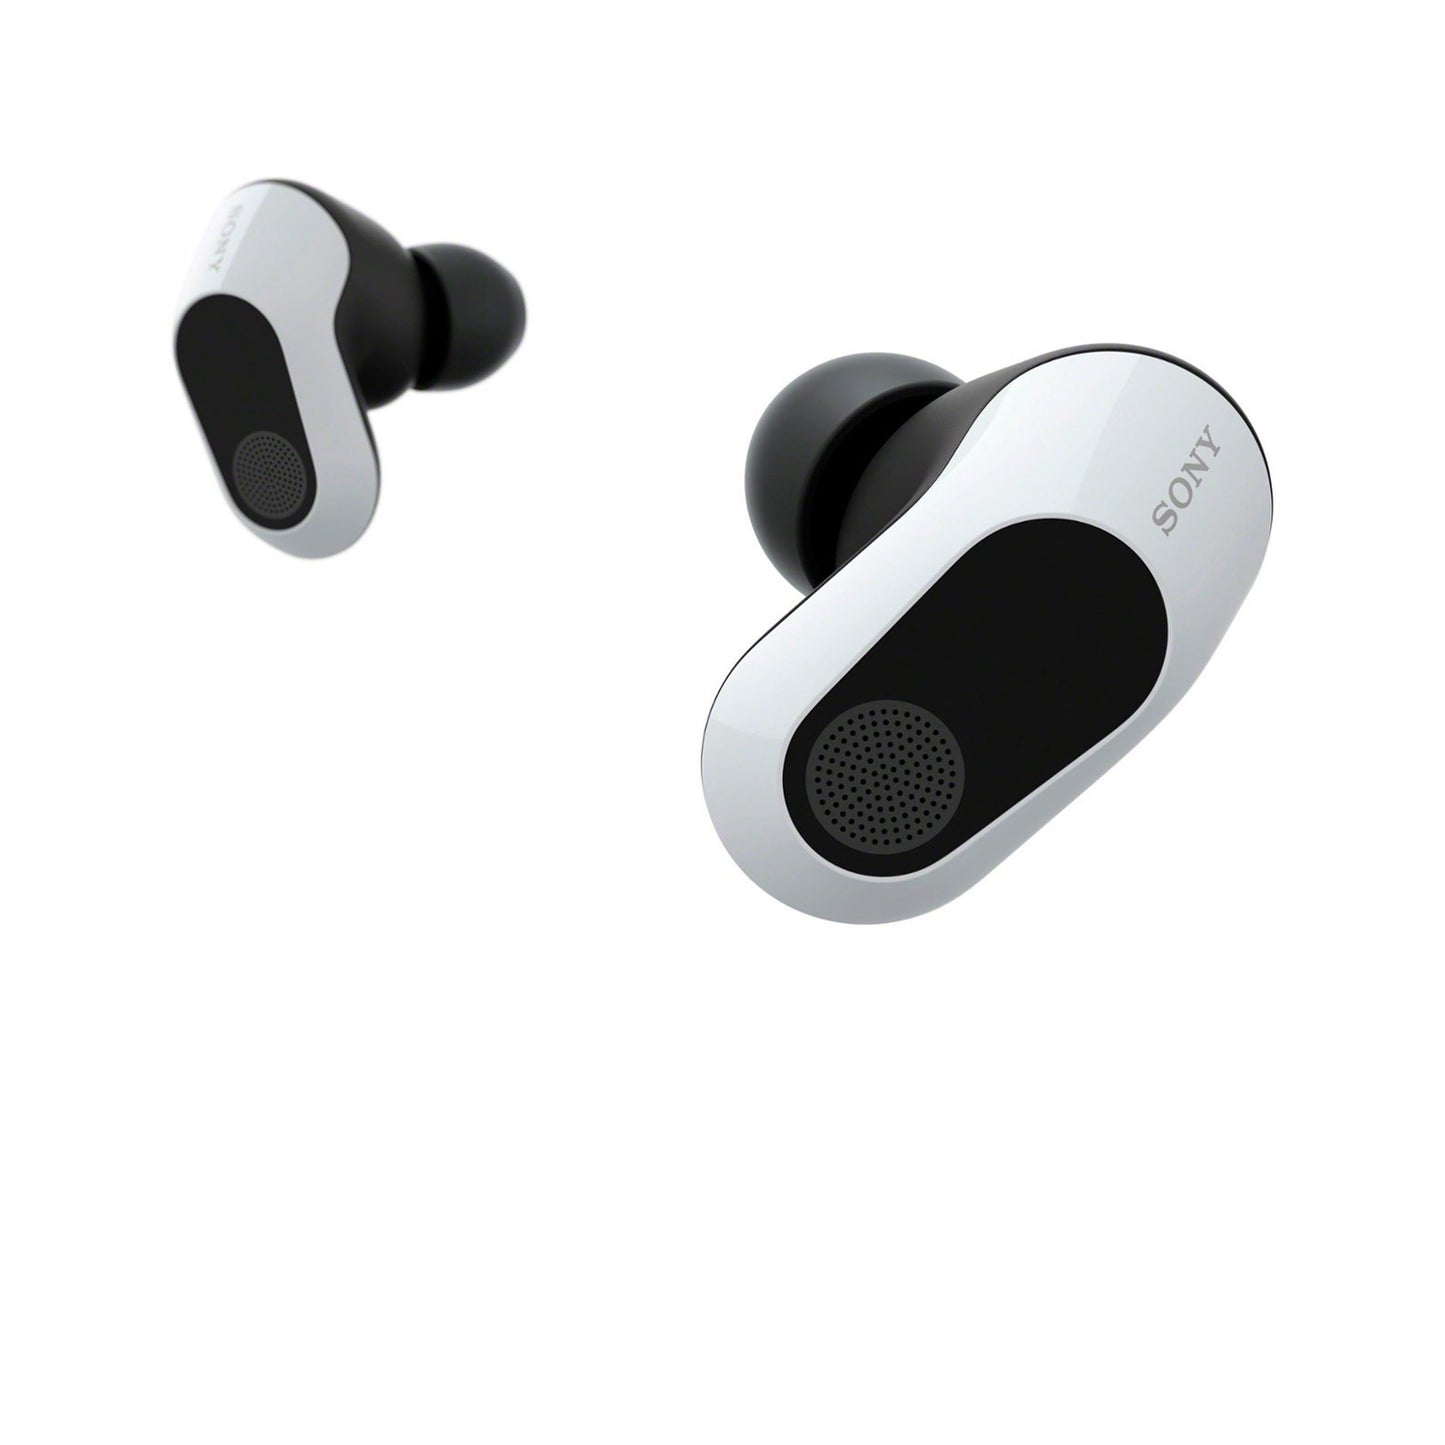 سوني - INZONE Buds سماعات أذن لاسلكية للألعاب بخاصية إلغاء الضوضاء للكمبيوتر الشخصي وPS5 - أبيض 